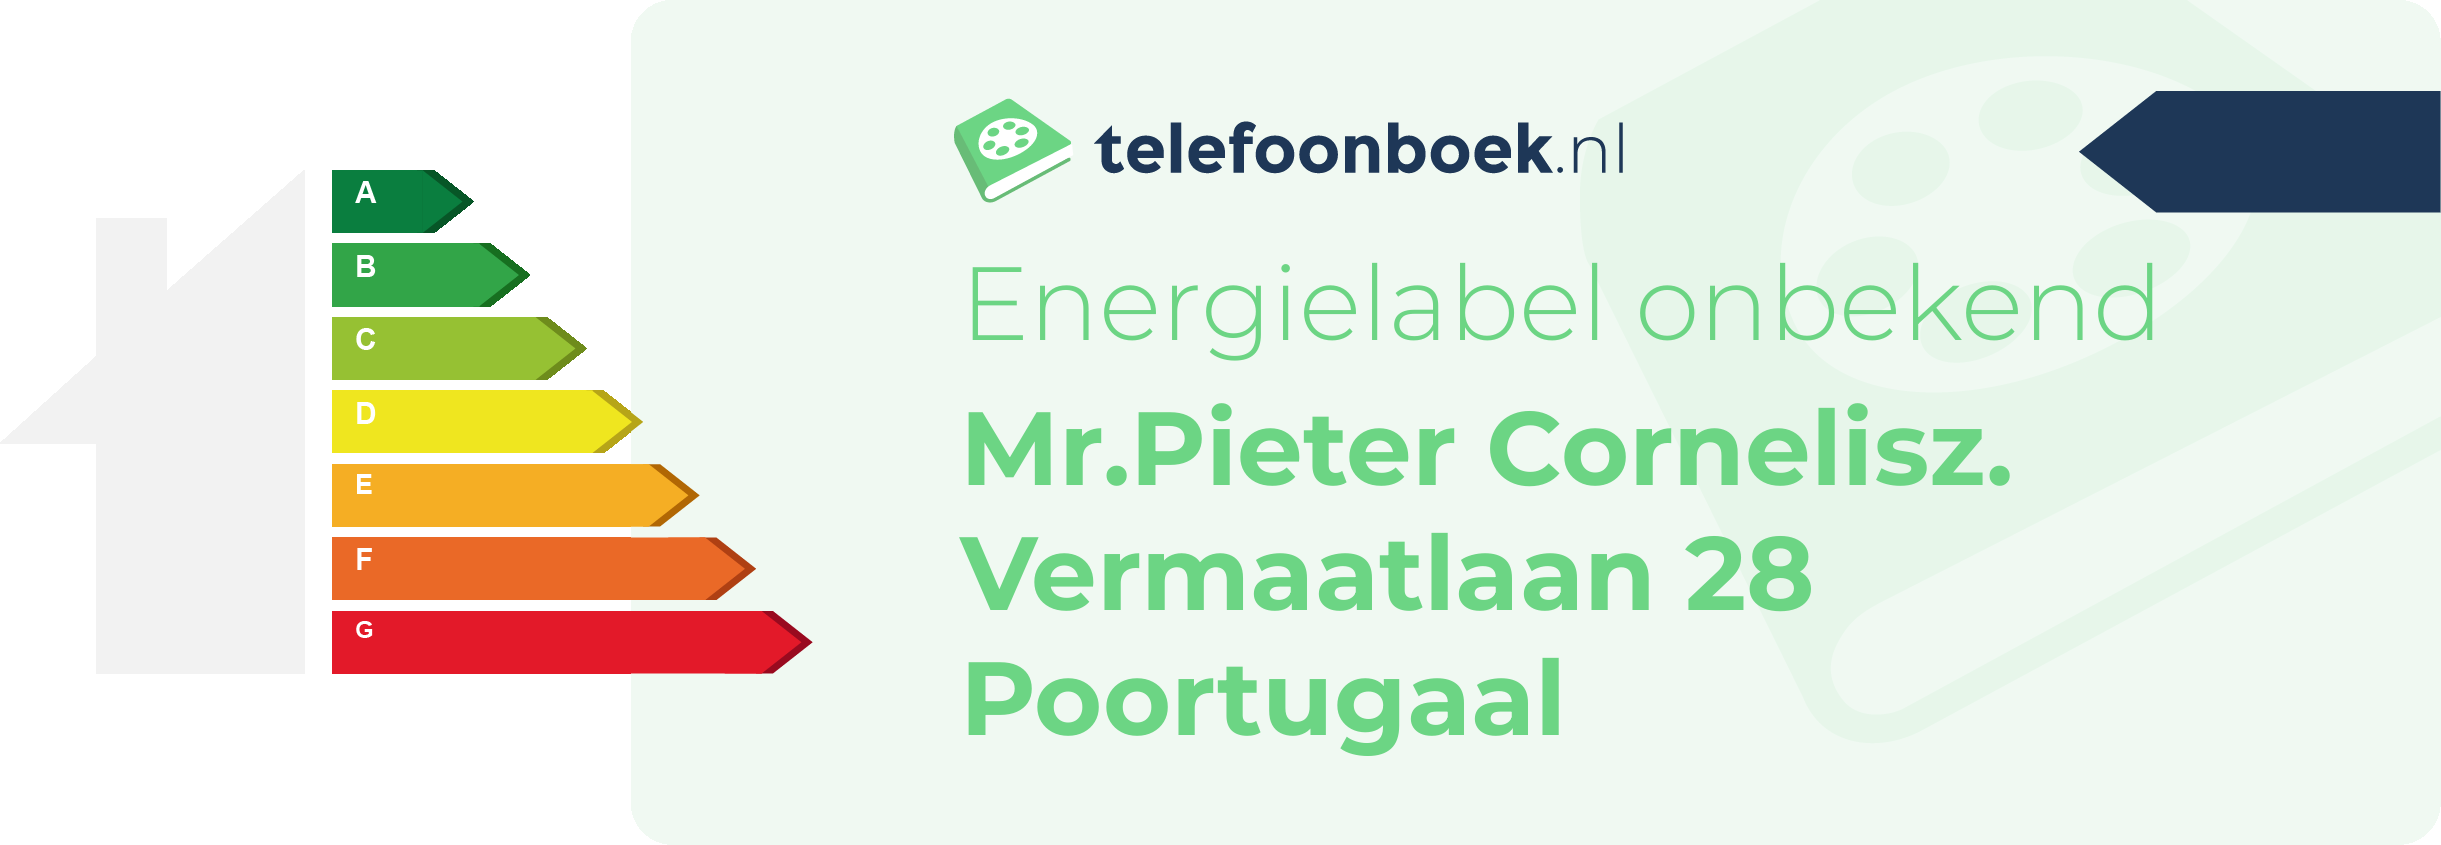 Energielabel Mr.Pieter Cornelisz. Vermaatlaan 28 Poortugaal